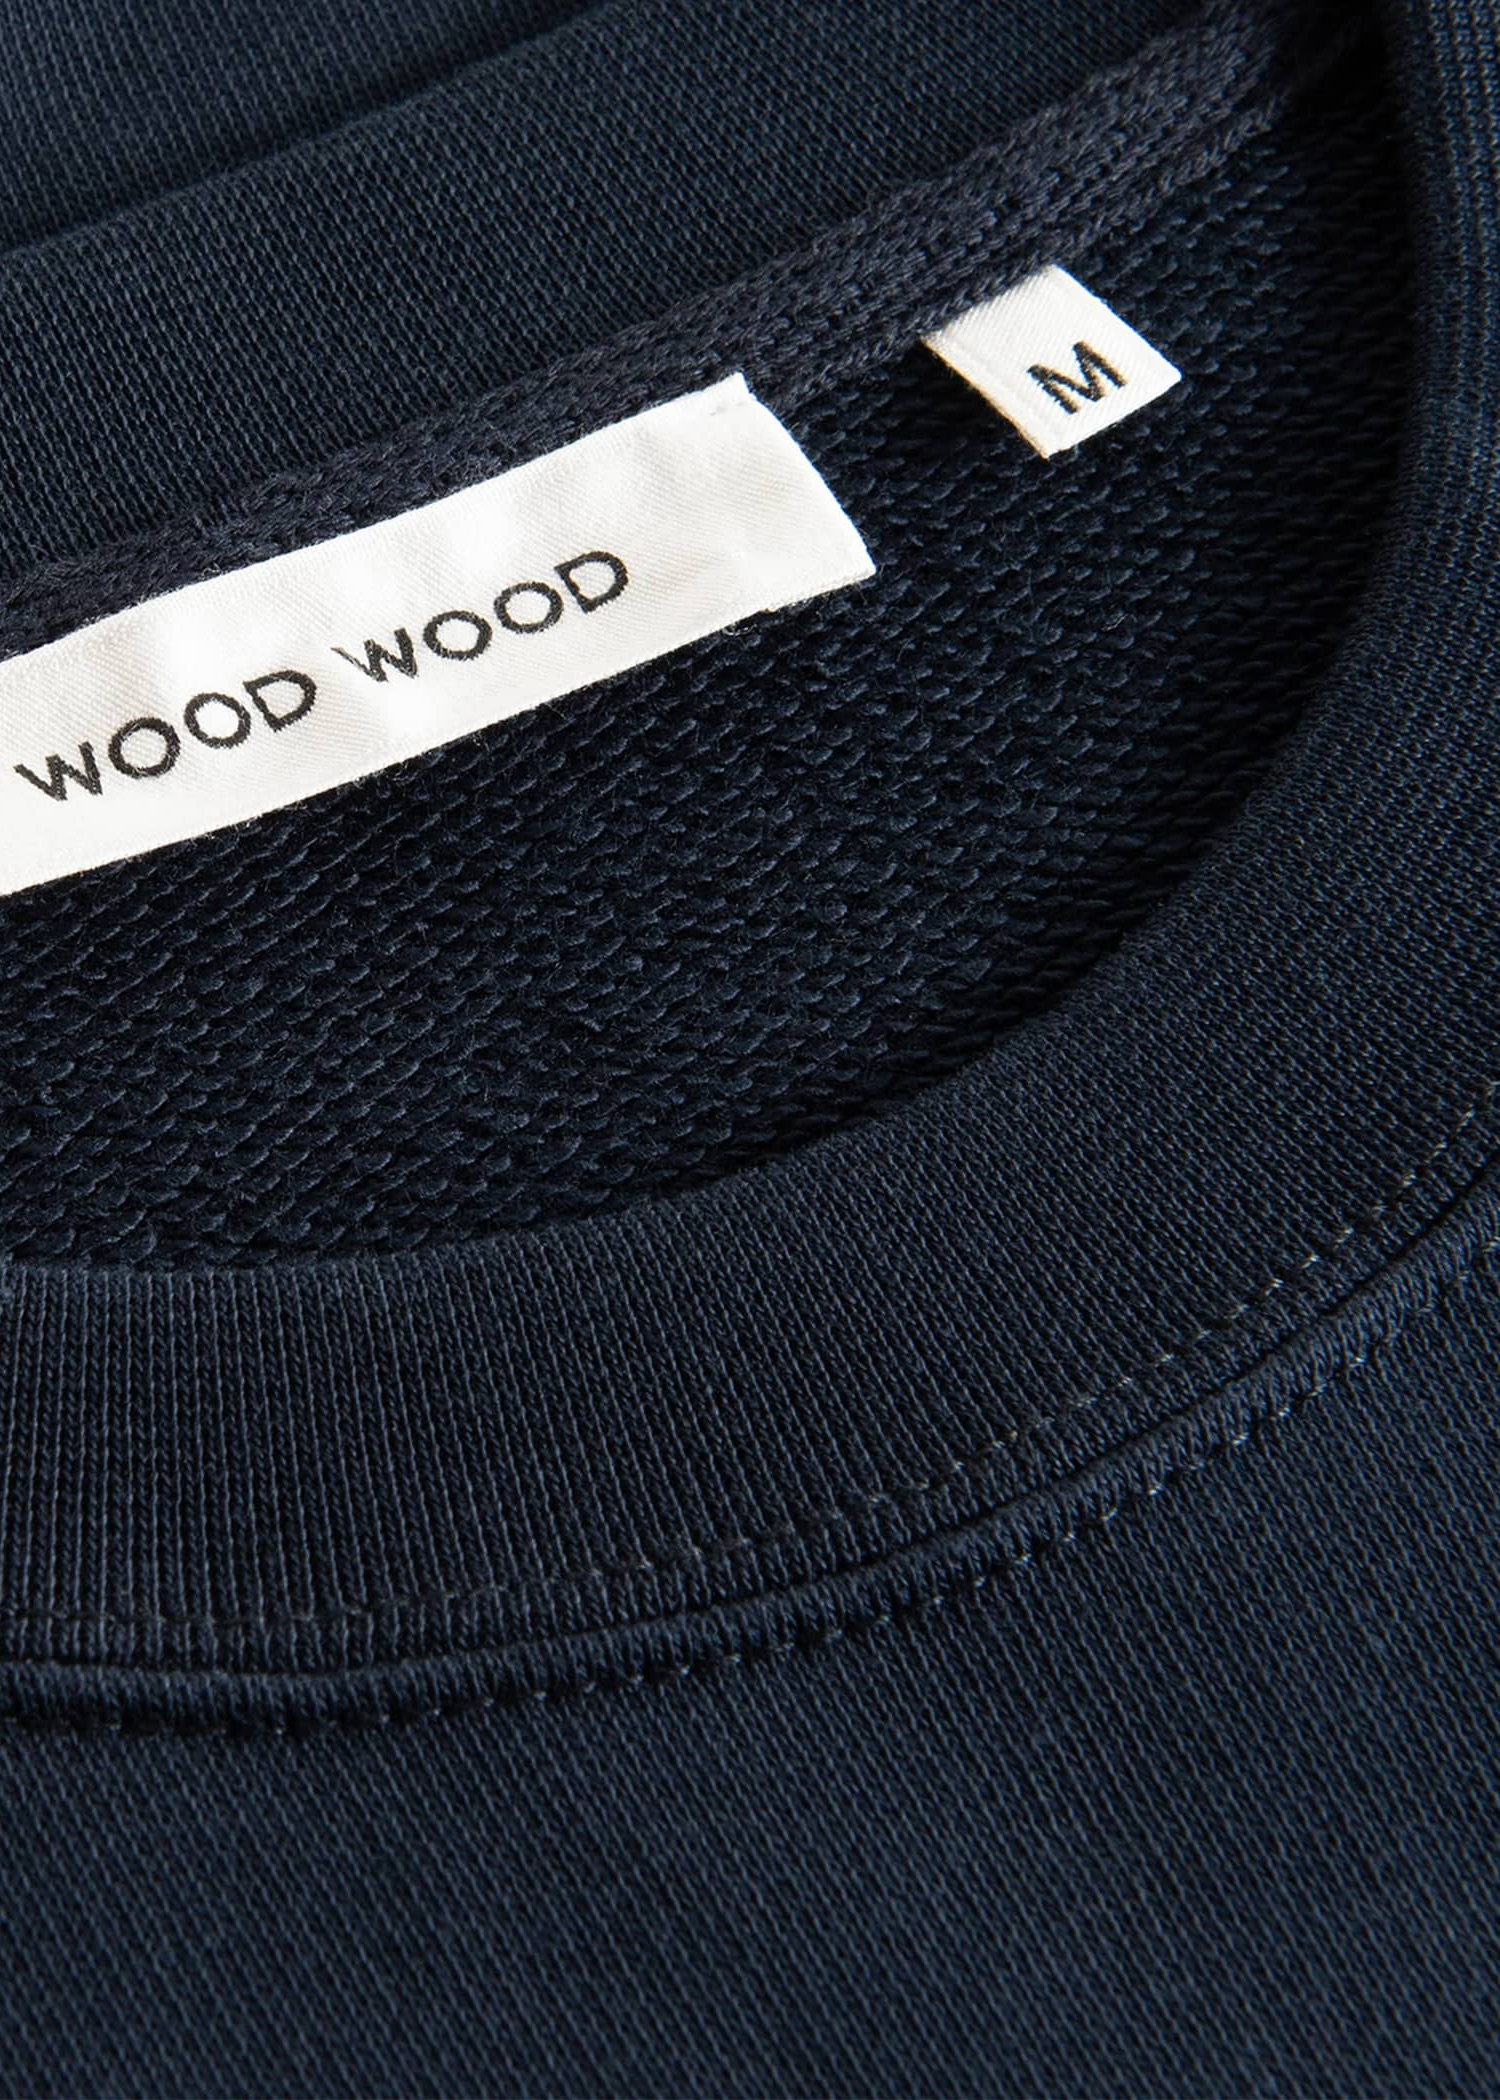 Wood Wood Hugh Logo Sweatshirt